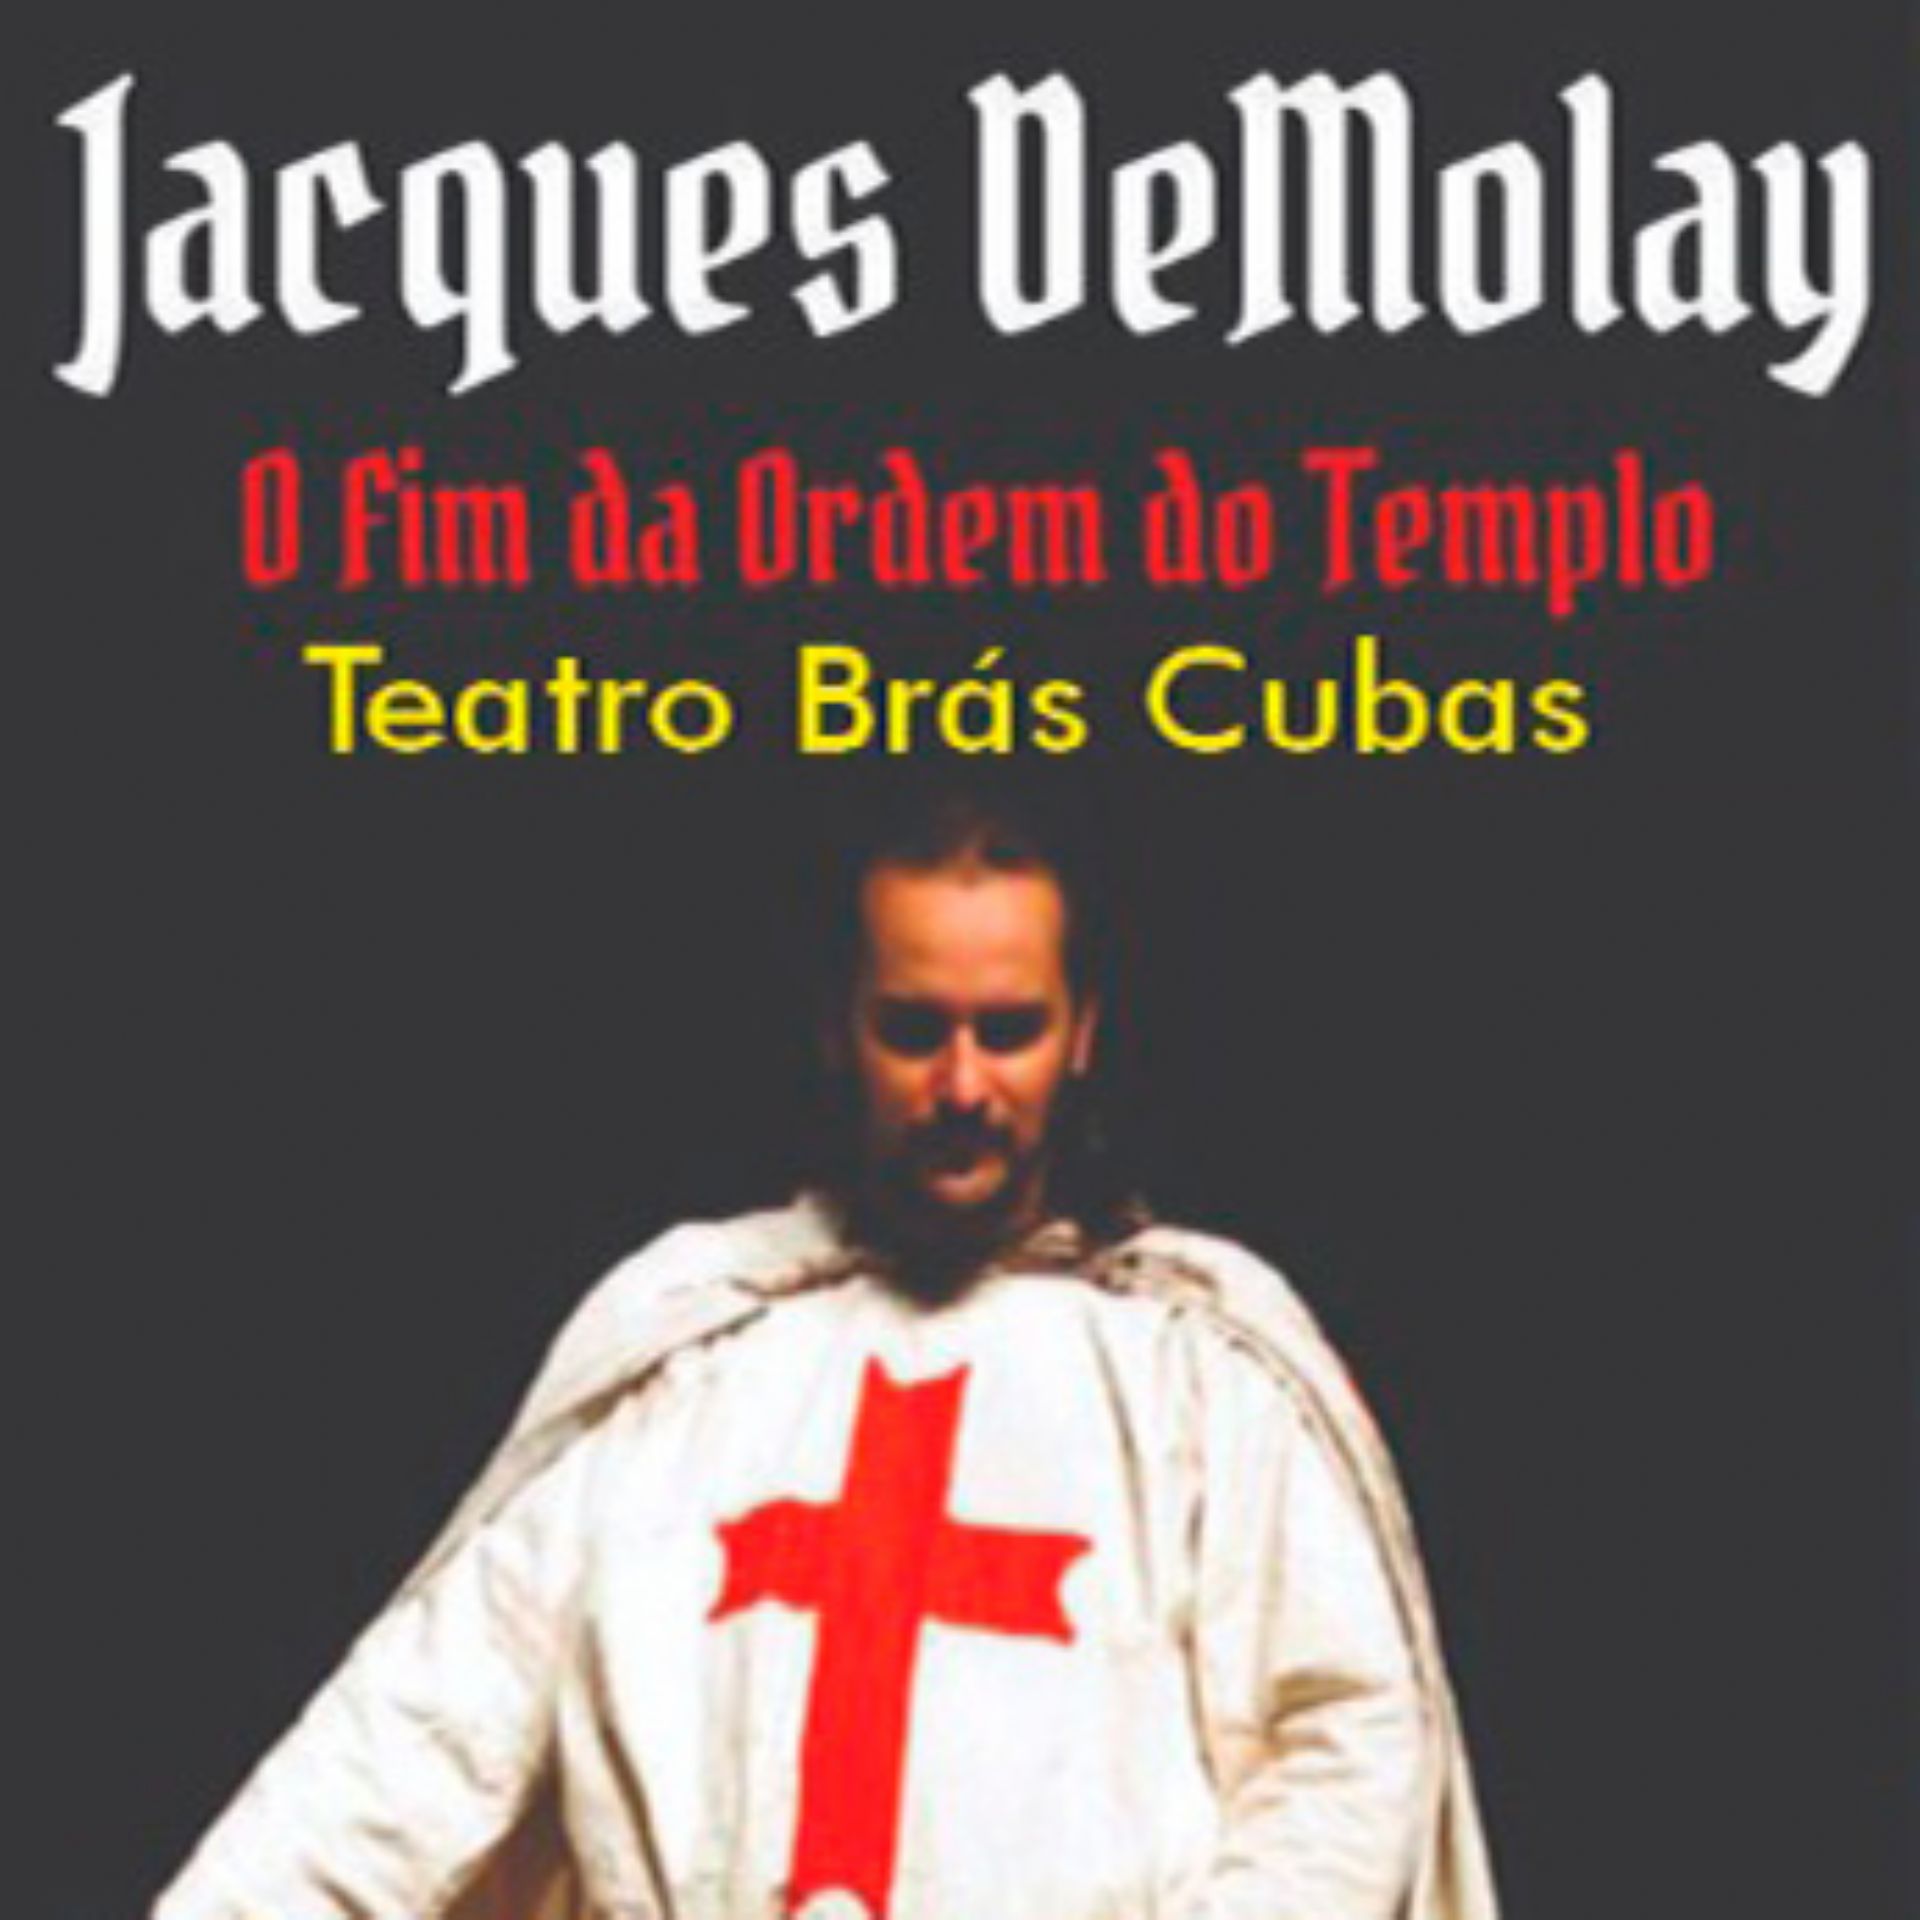 Jacques DeMolay - O Fim da Ordem do Templo